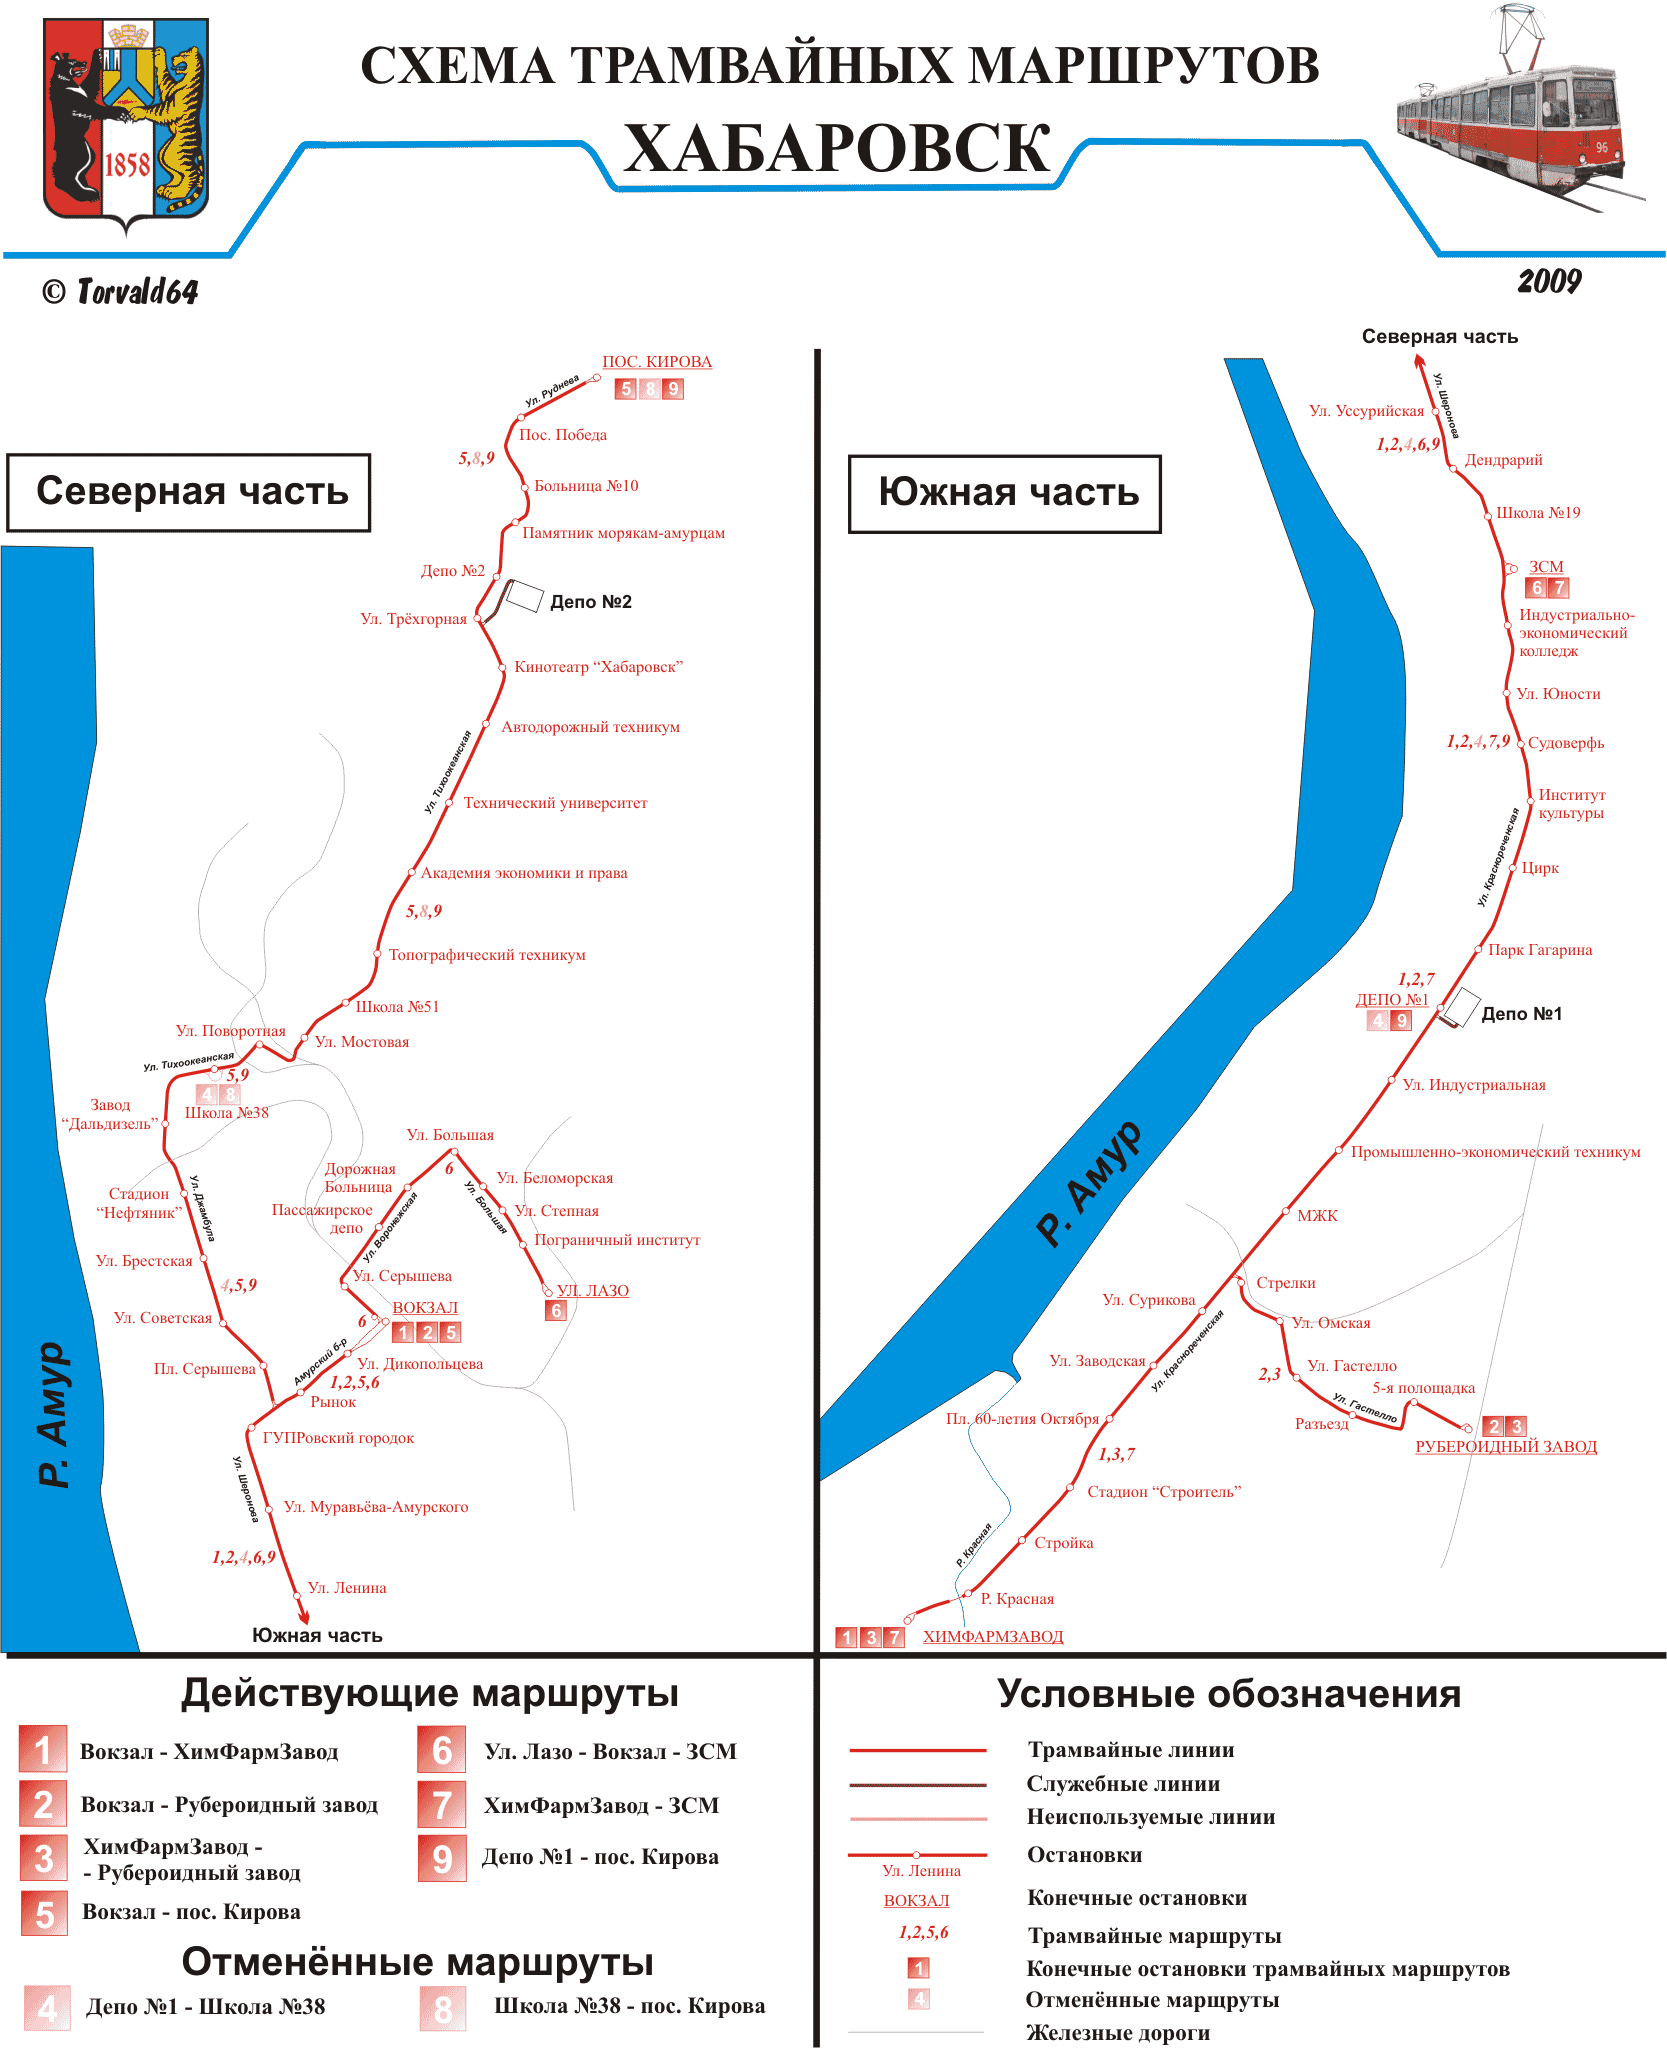 Khabarovsk — Maps